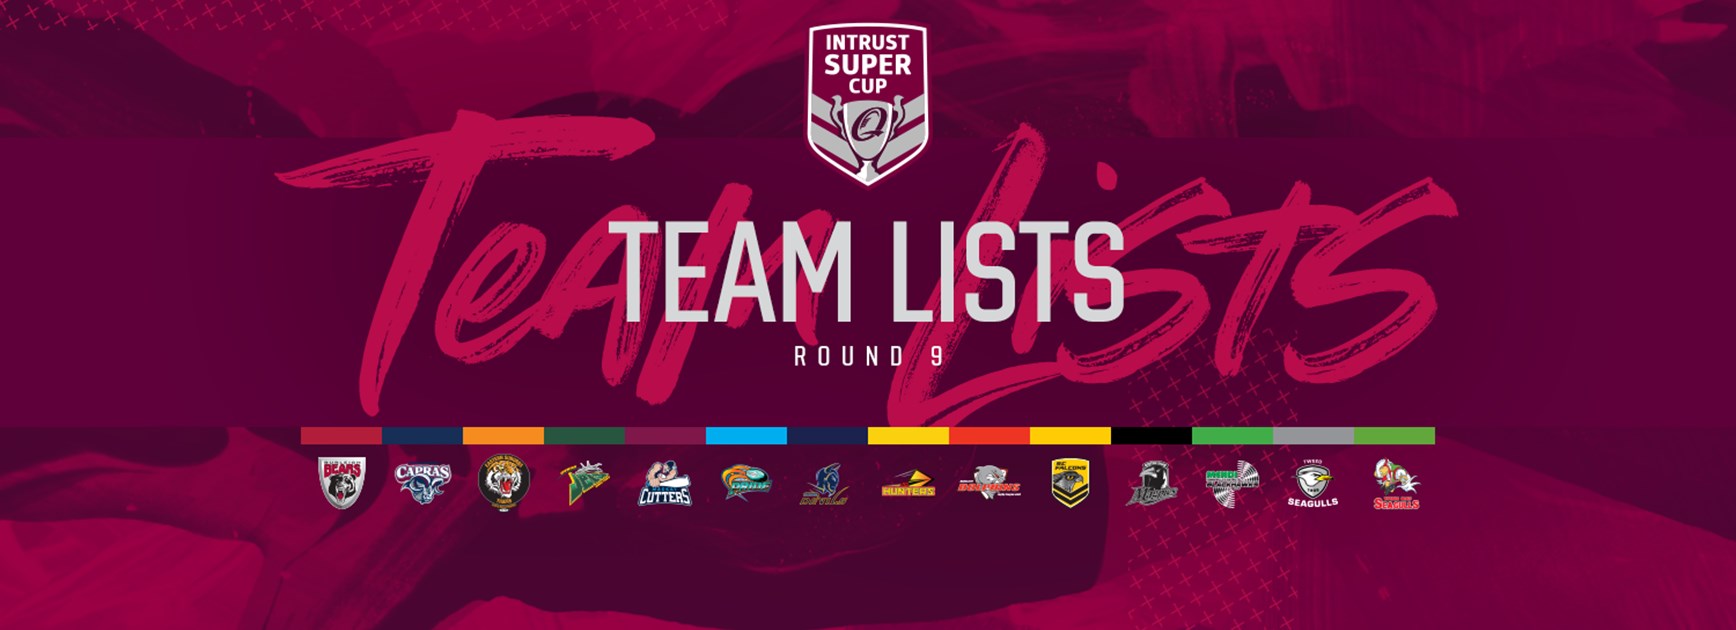 Intrust Super Cup Round 9 teams